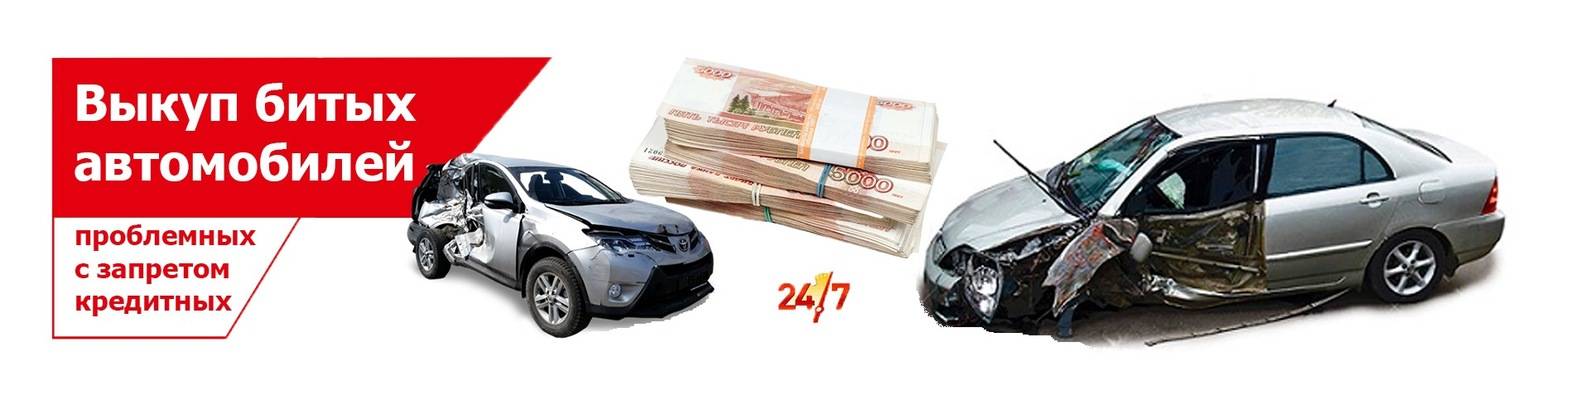 Как продать битый автомобиль | avtobrands.ru